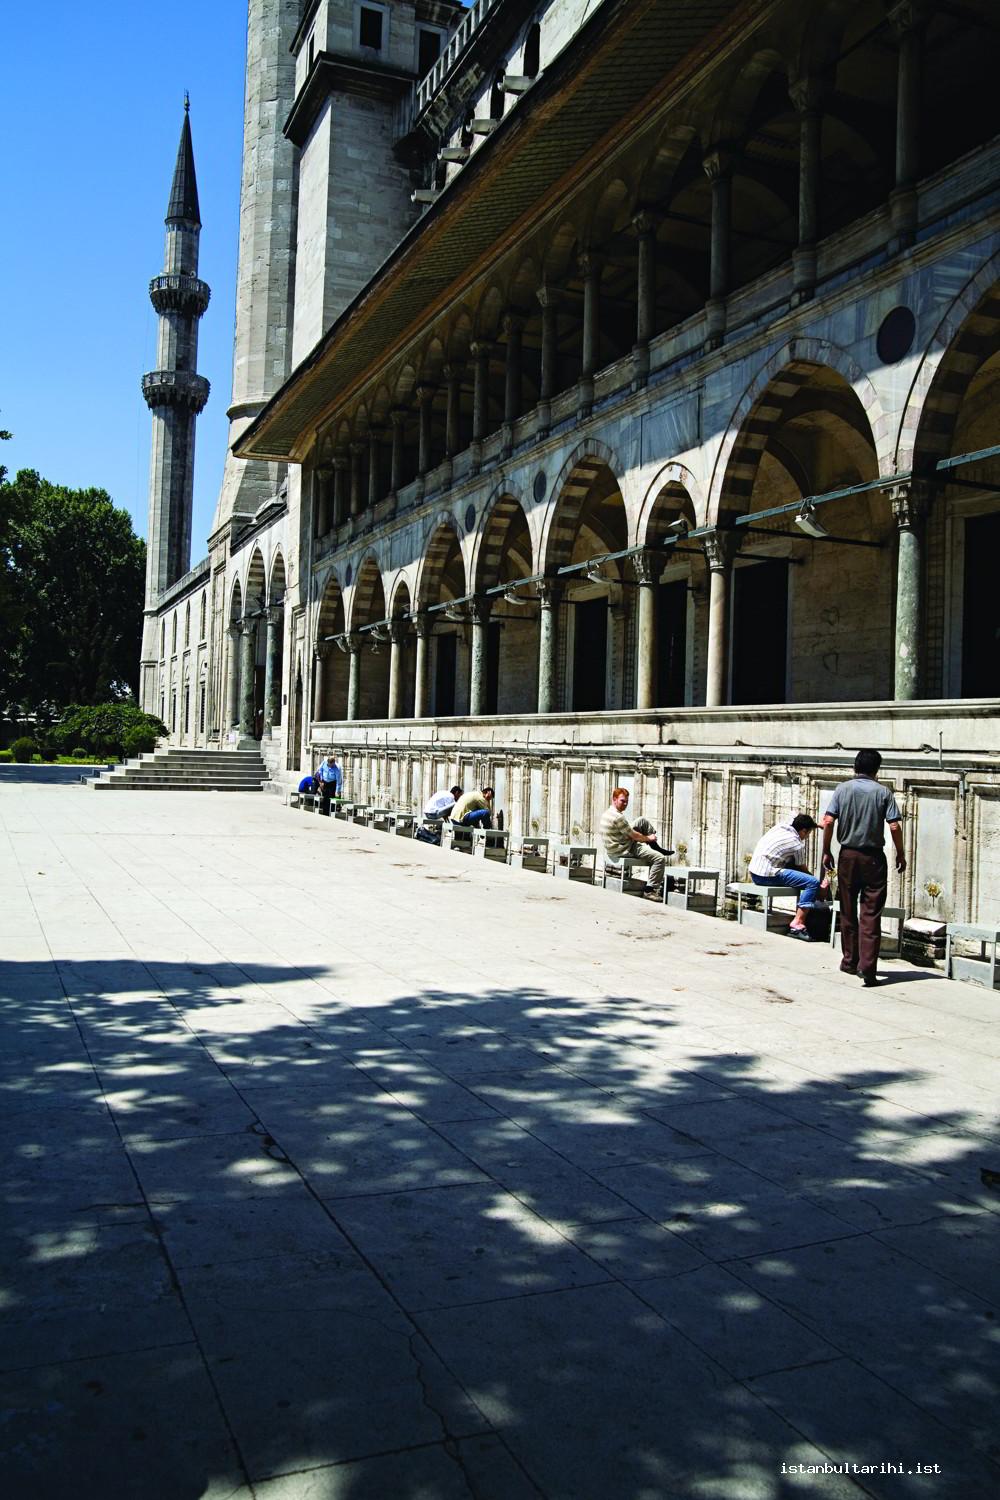 6- Süleymaniye Camii